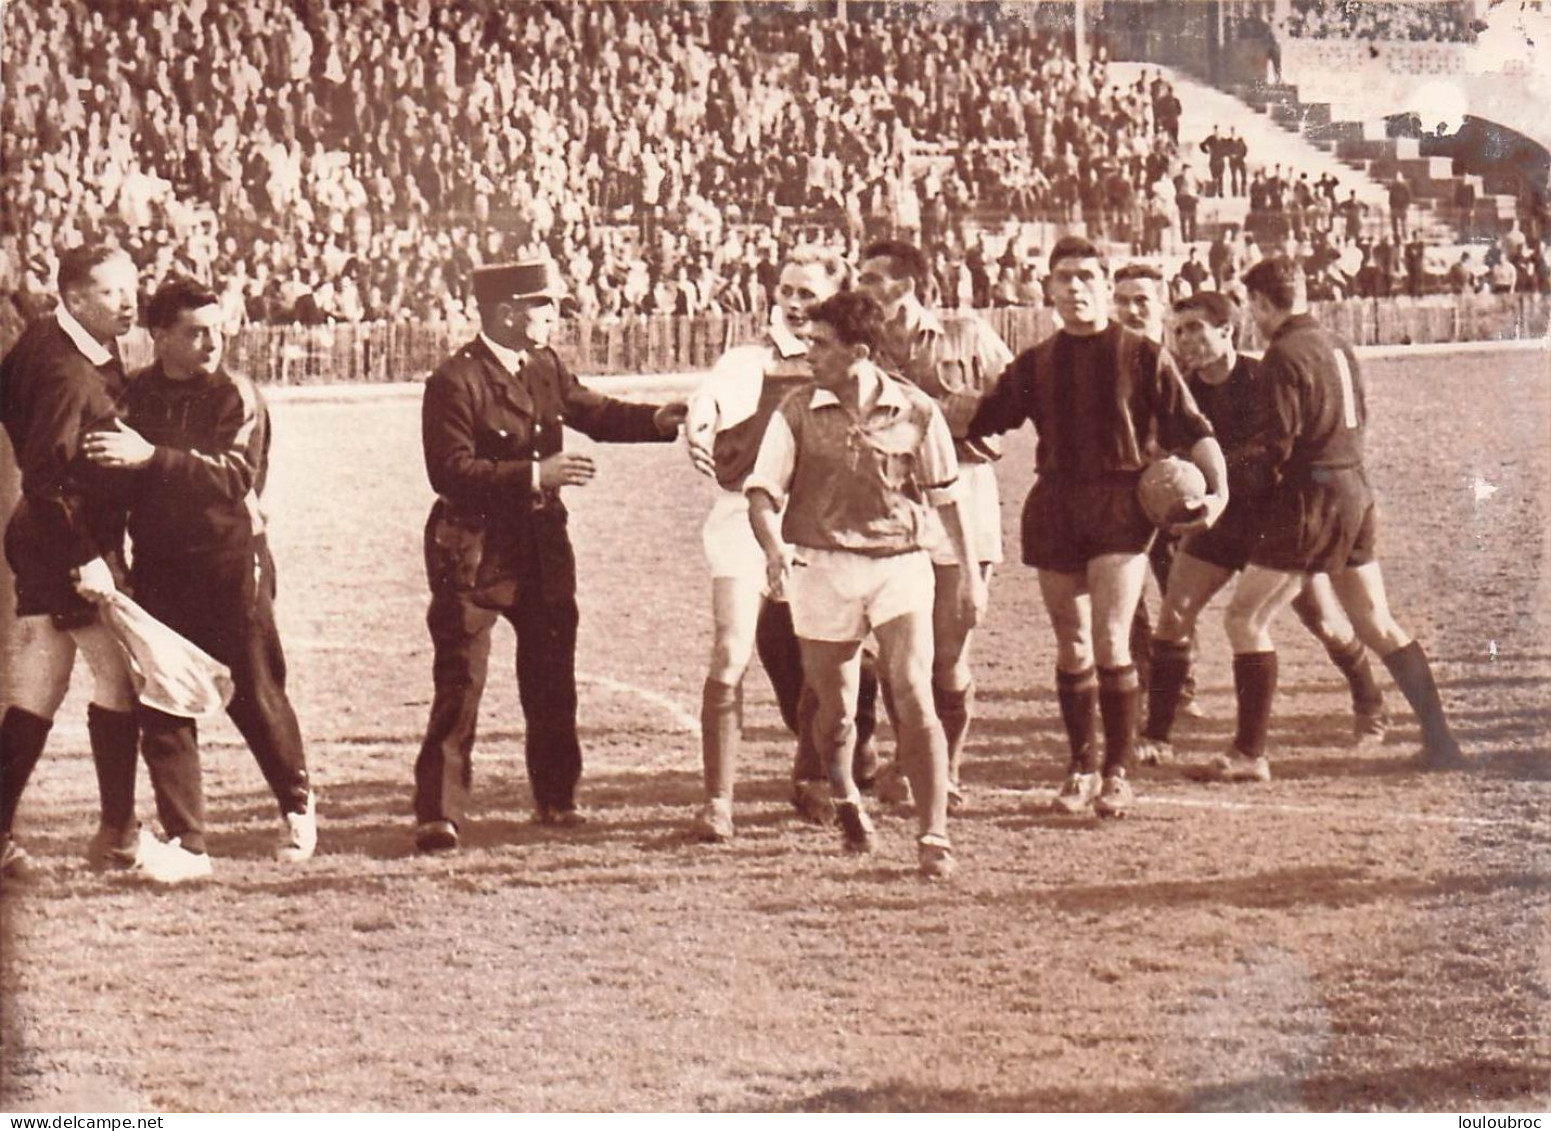 FOOTBALL 03/1961 INCIDENTS APRES L'ELIMINATION DE NICE CONTRE SEDAN LE JUGE DE TOUCHE PRIS A PARTI PHOTO 18X13CM - Sports